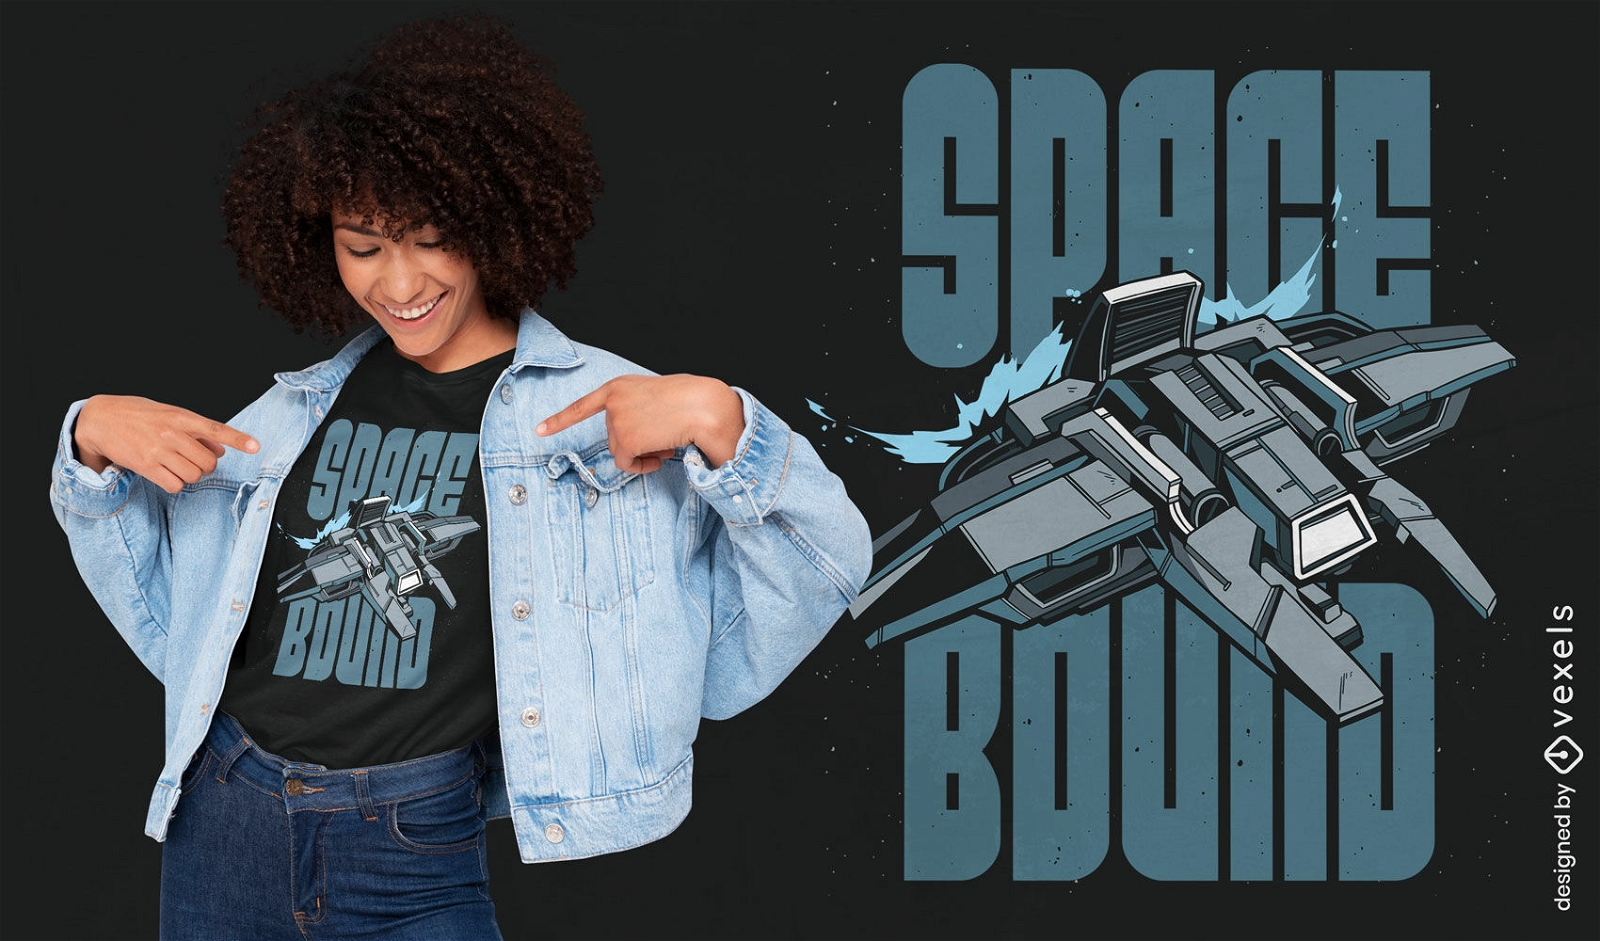 Diseño de camiseta con destino al espacio